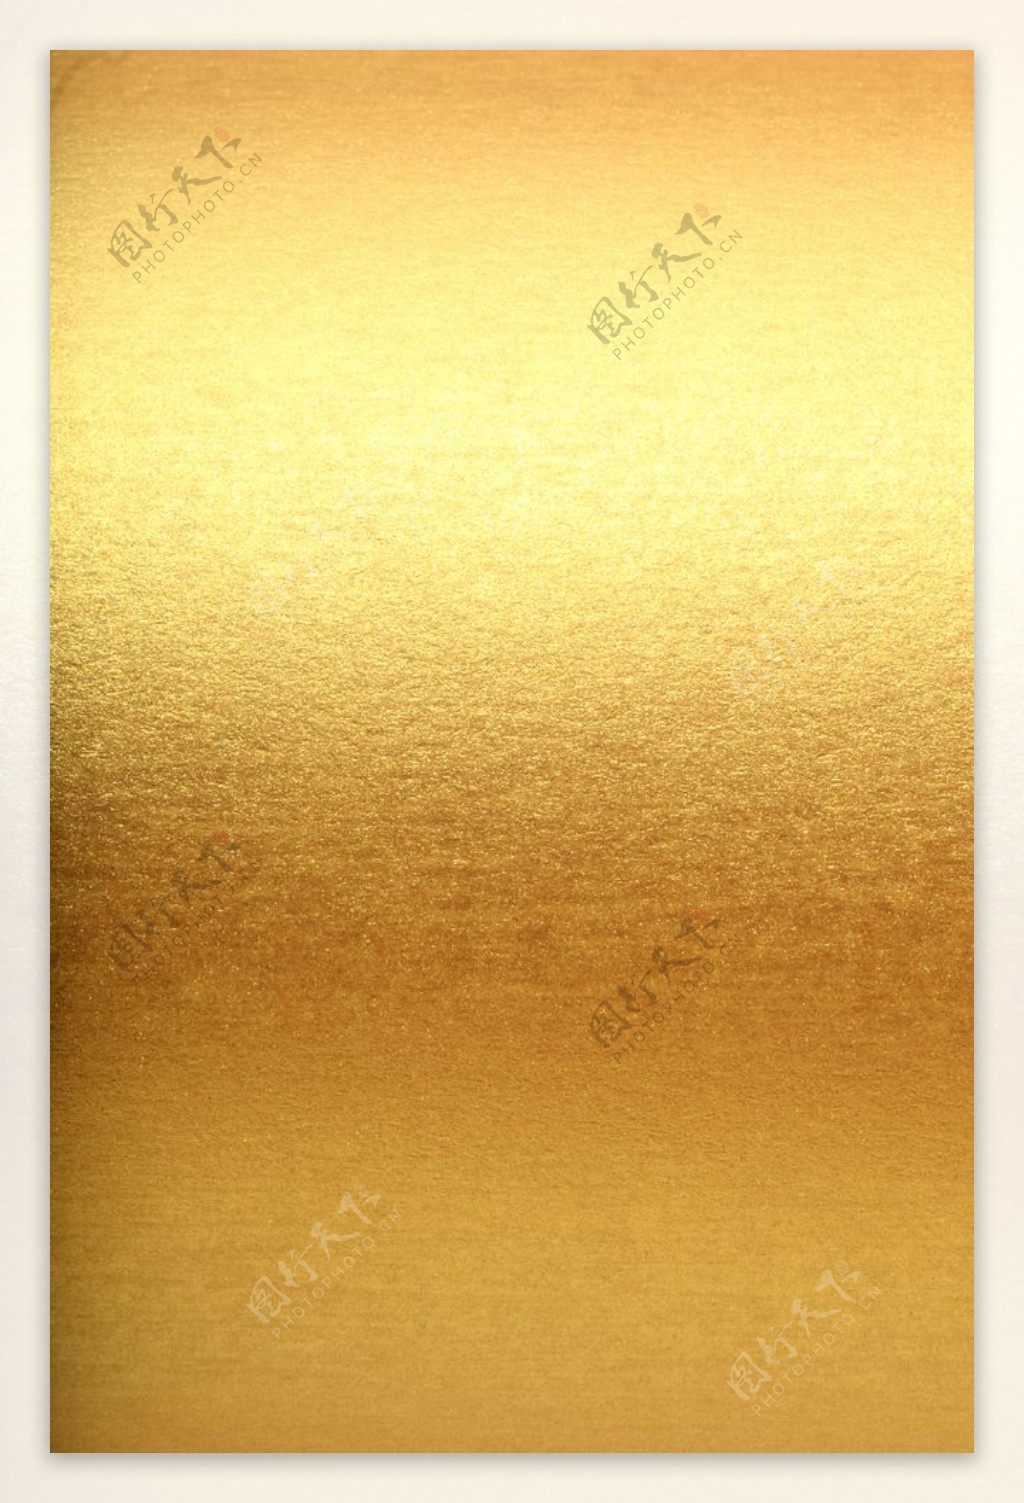 金色背景金色墙壁金属大合集图片